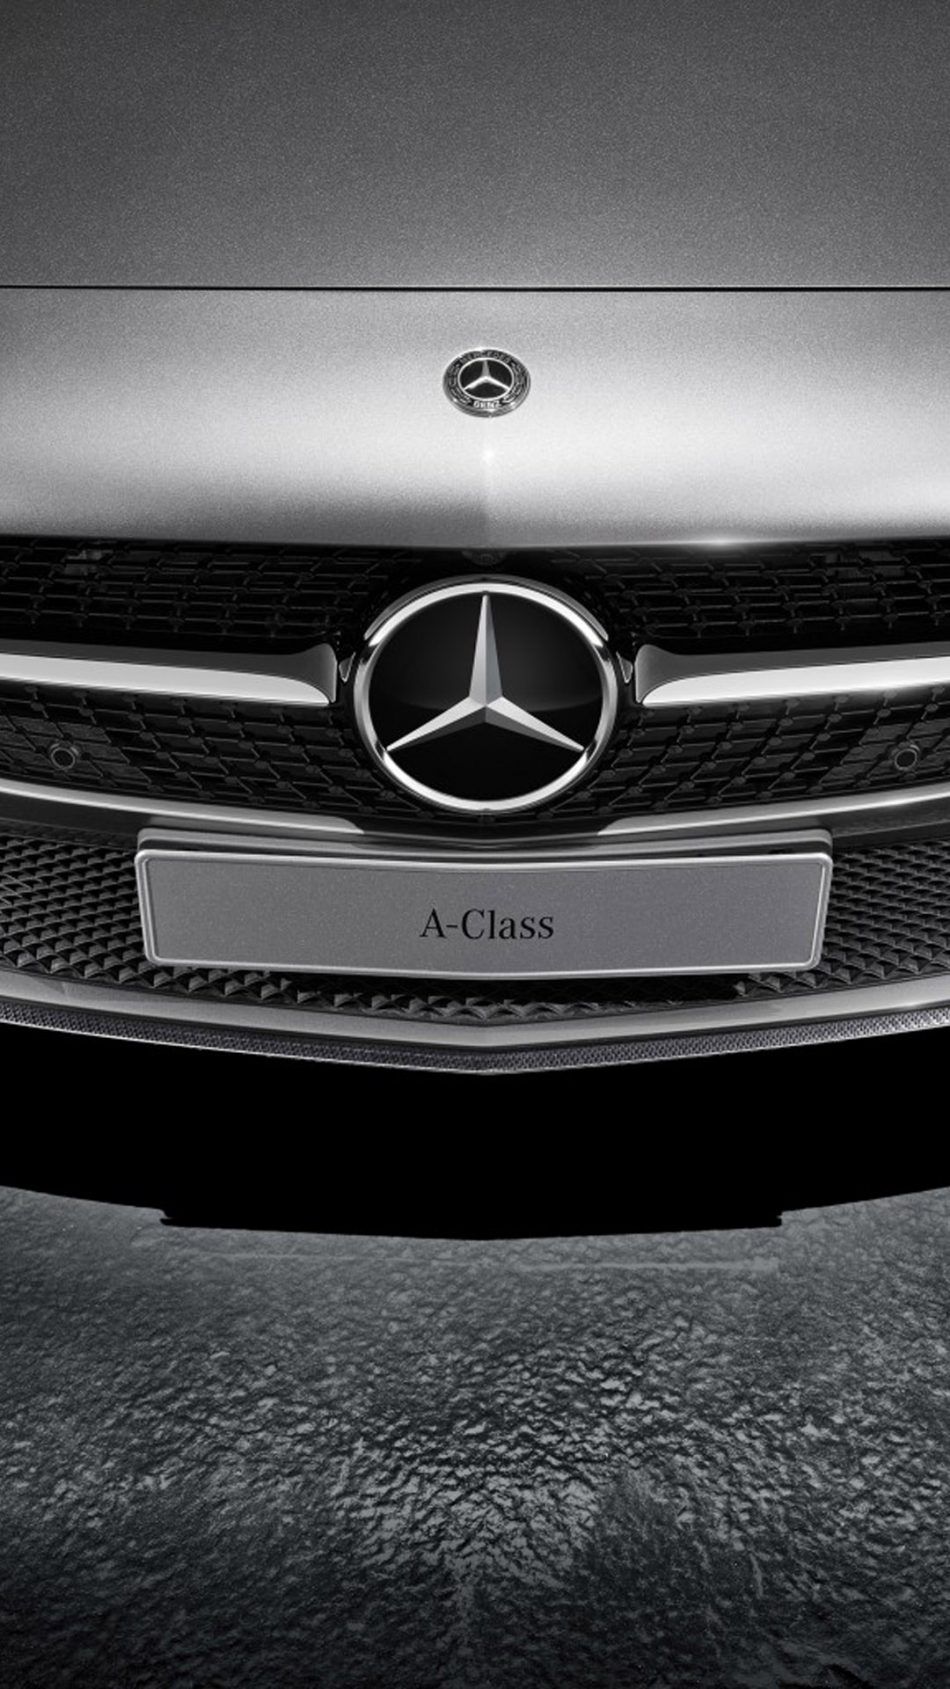 Mercedes Benz A Class Free 4K Ultra HD Mobile Wallpaper